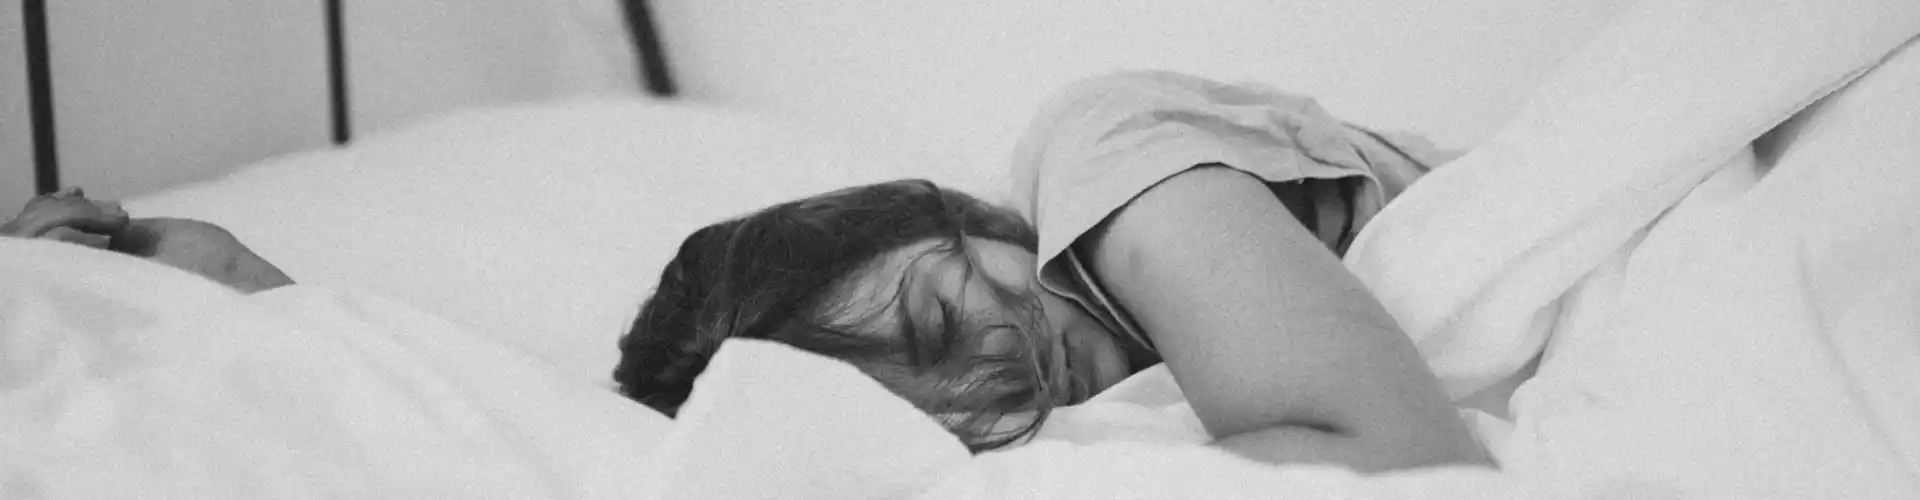 Сон - аюрведические рекомендации по восстановлению сна